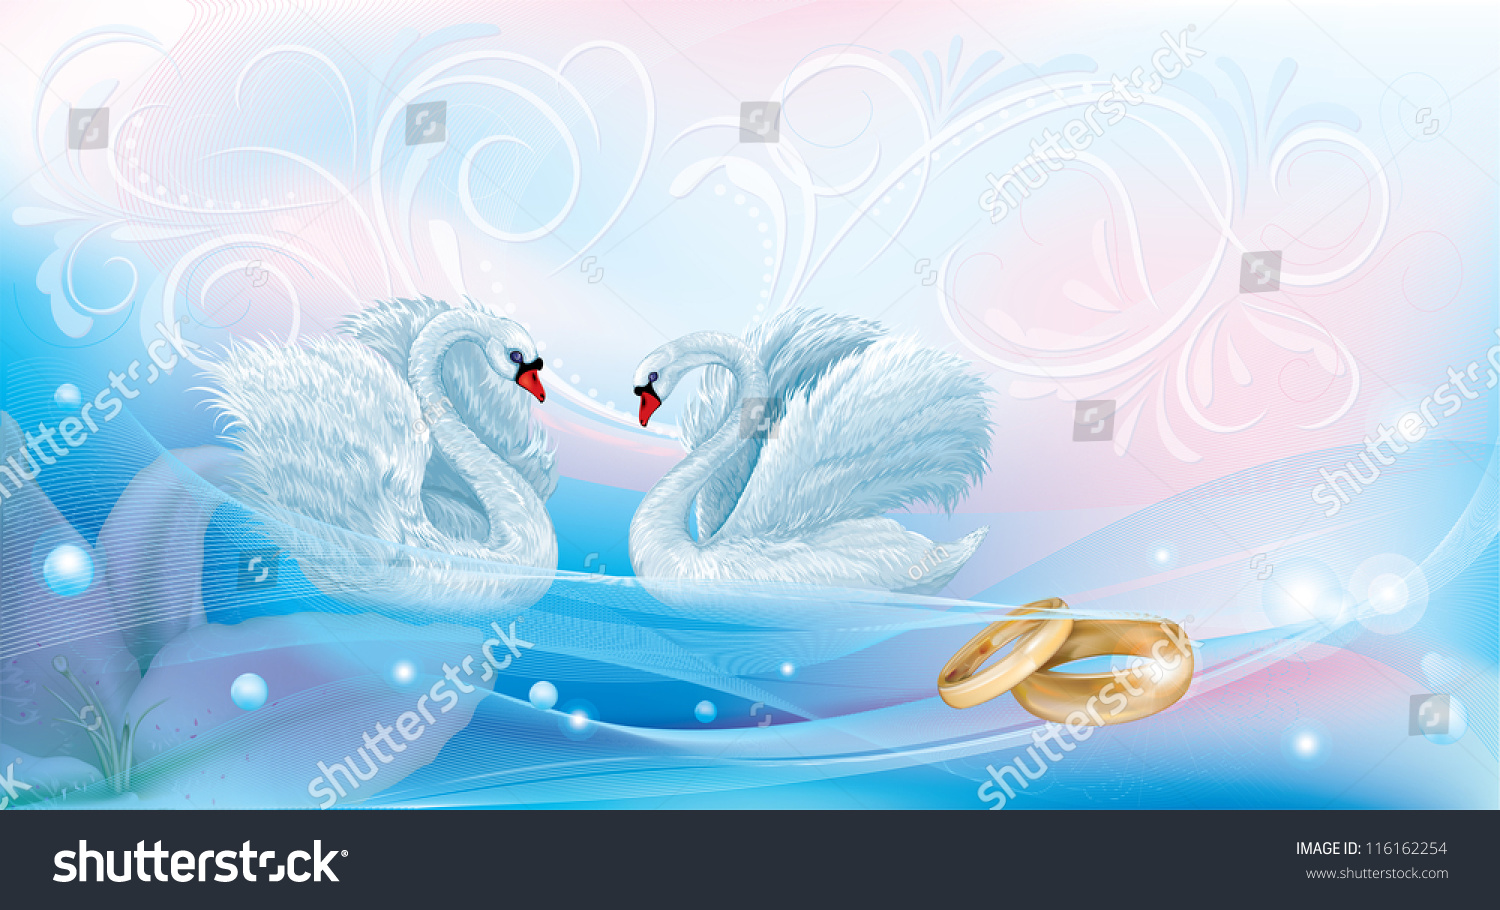 Обручальные кольца с лебедями